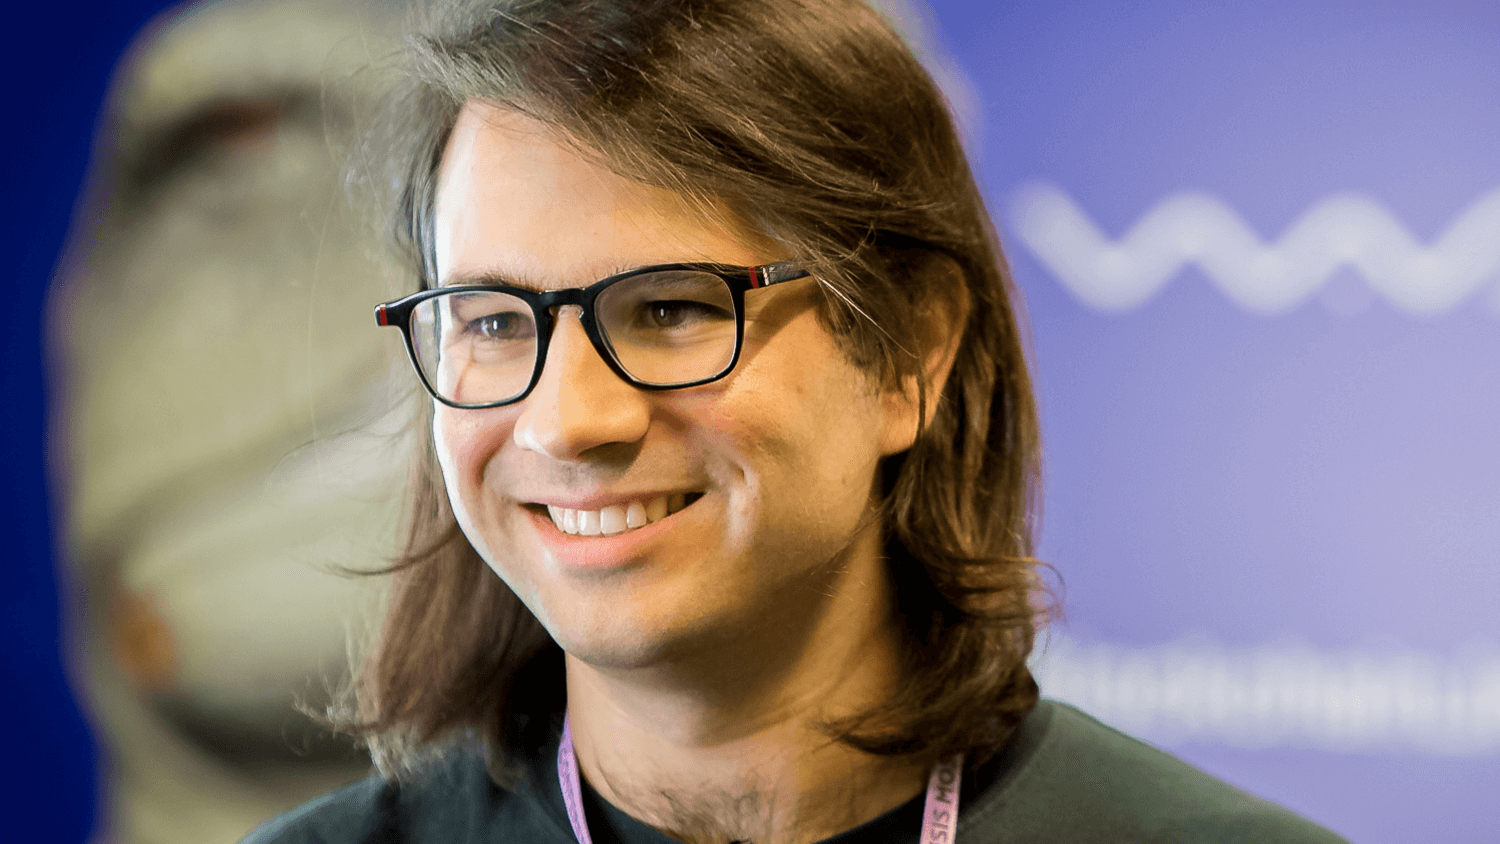 Wykład na Twitterze: Witalik Бутерин opowiedział o tworzeniu Casper dla Ethereum